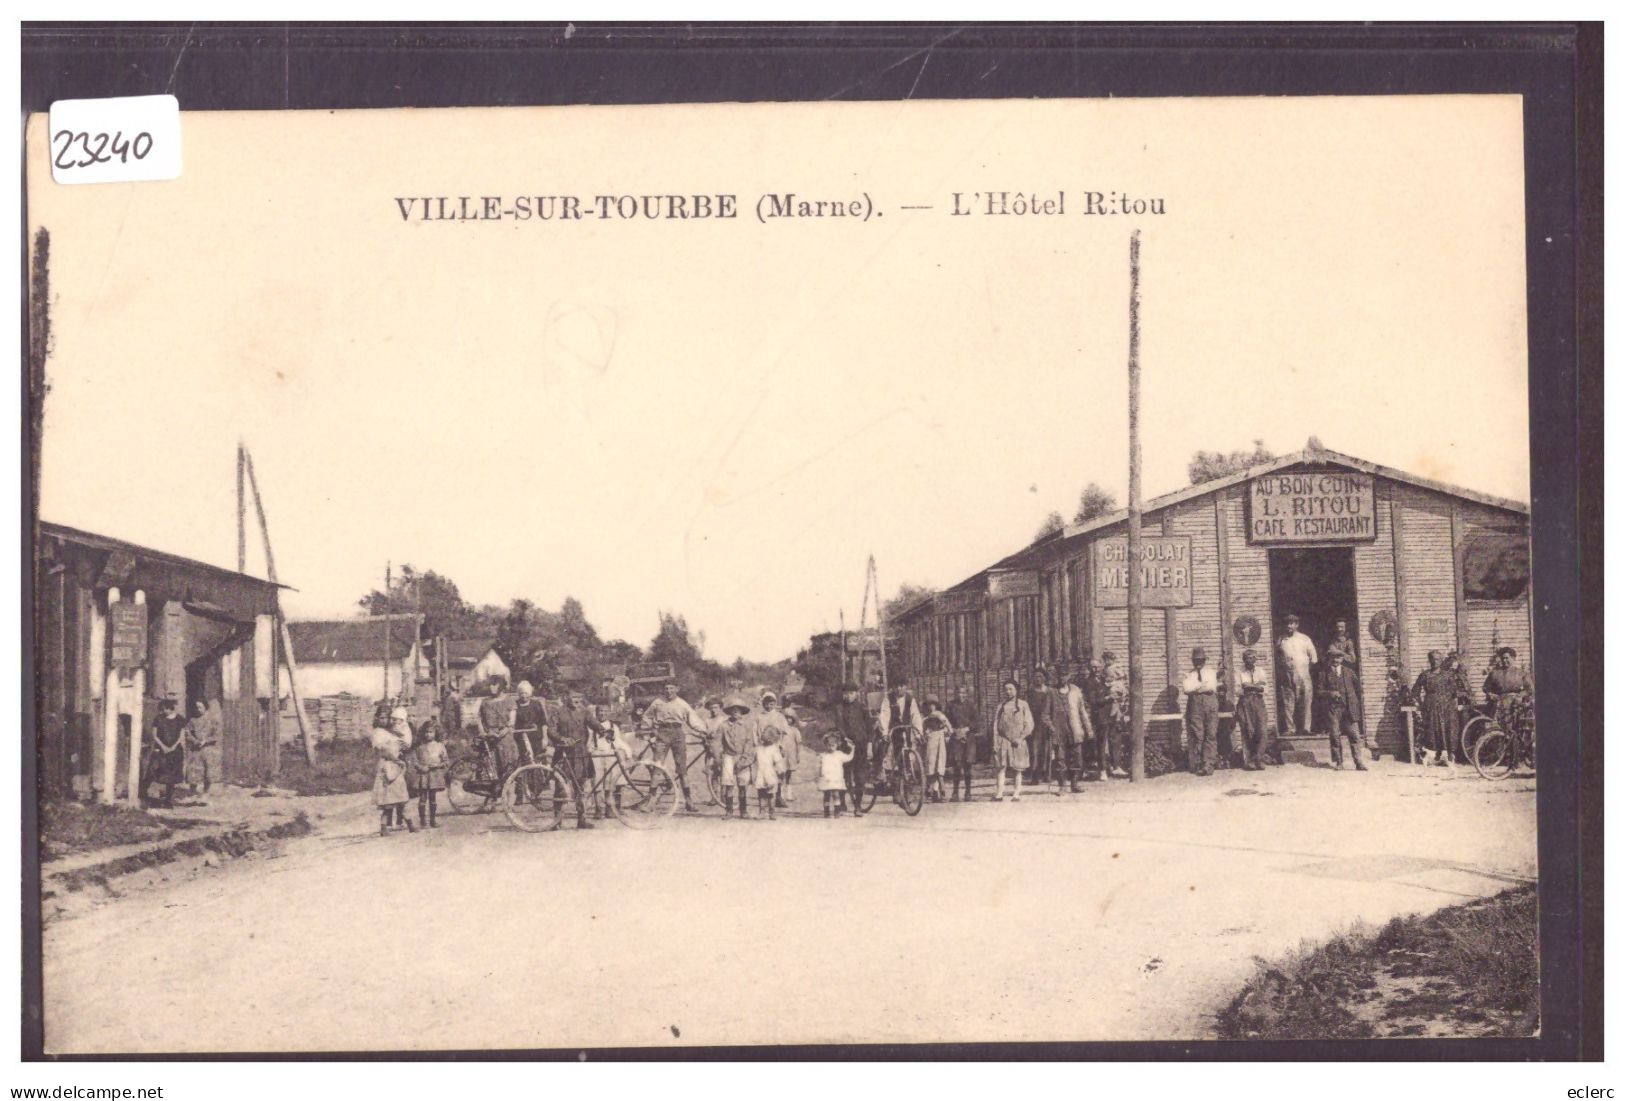 VILLE SUR TOURBE - HOTEL RITOU - CARTE ORIGINALE D'EPOQUE NON CIRCULEE - TB - Ville-sur-Tourbe